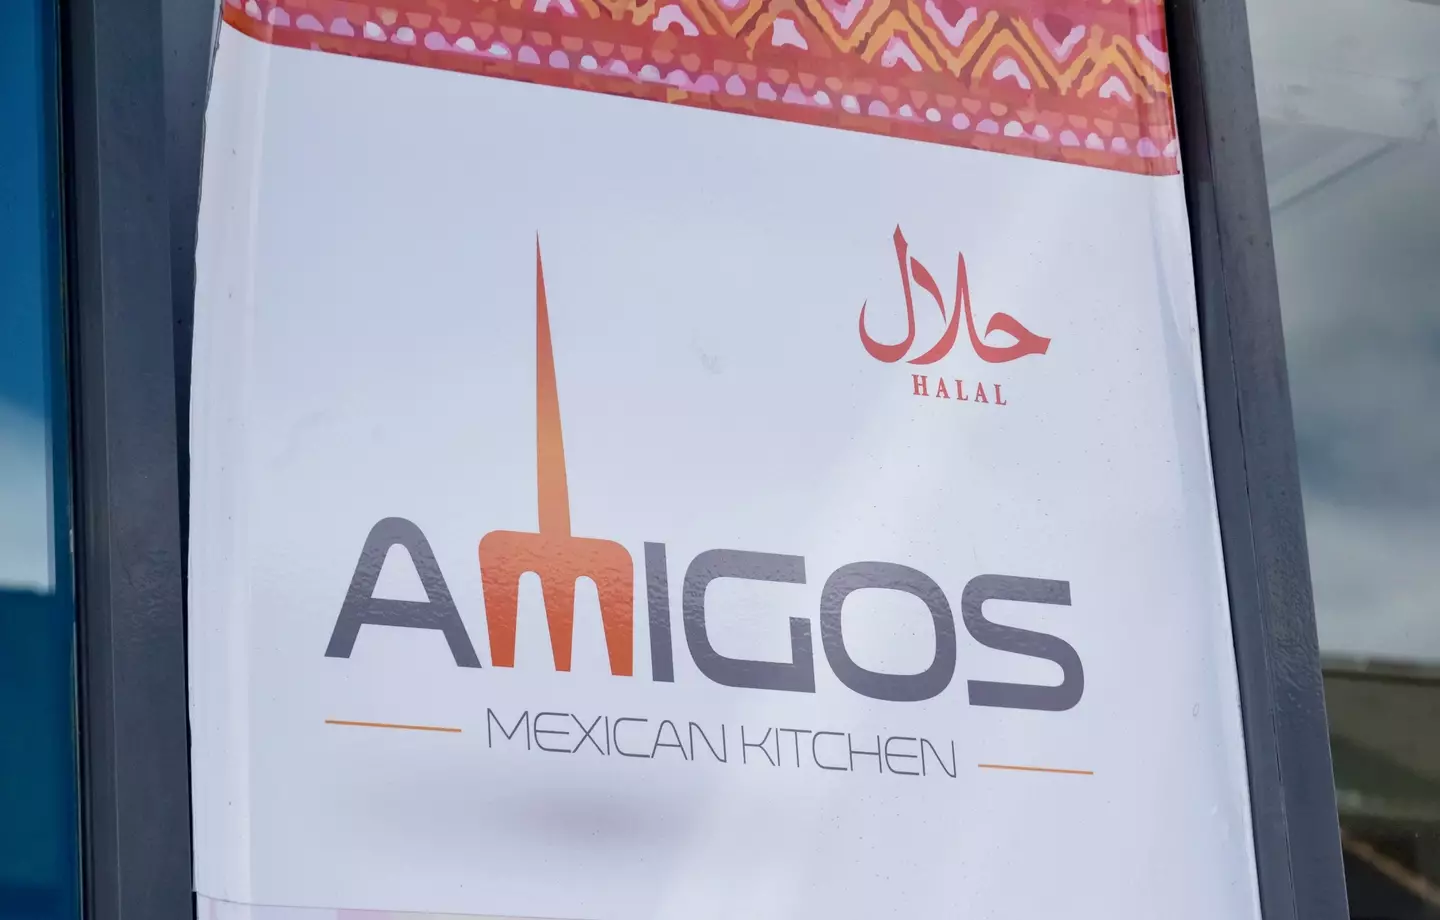 Billie visited Amigos Mexican Kitchen in Sheffield.